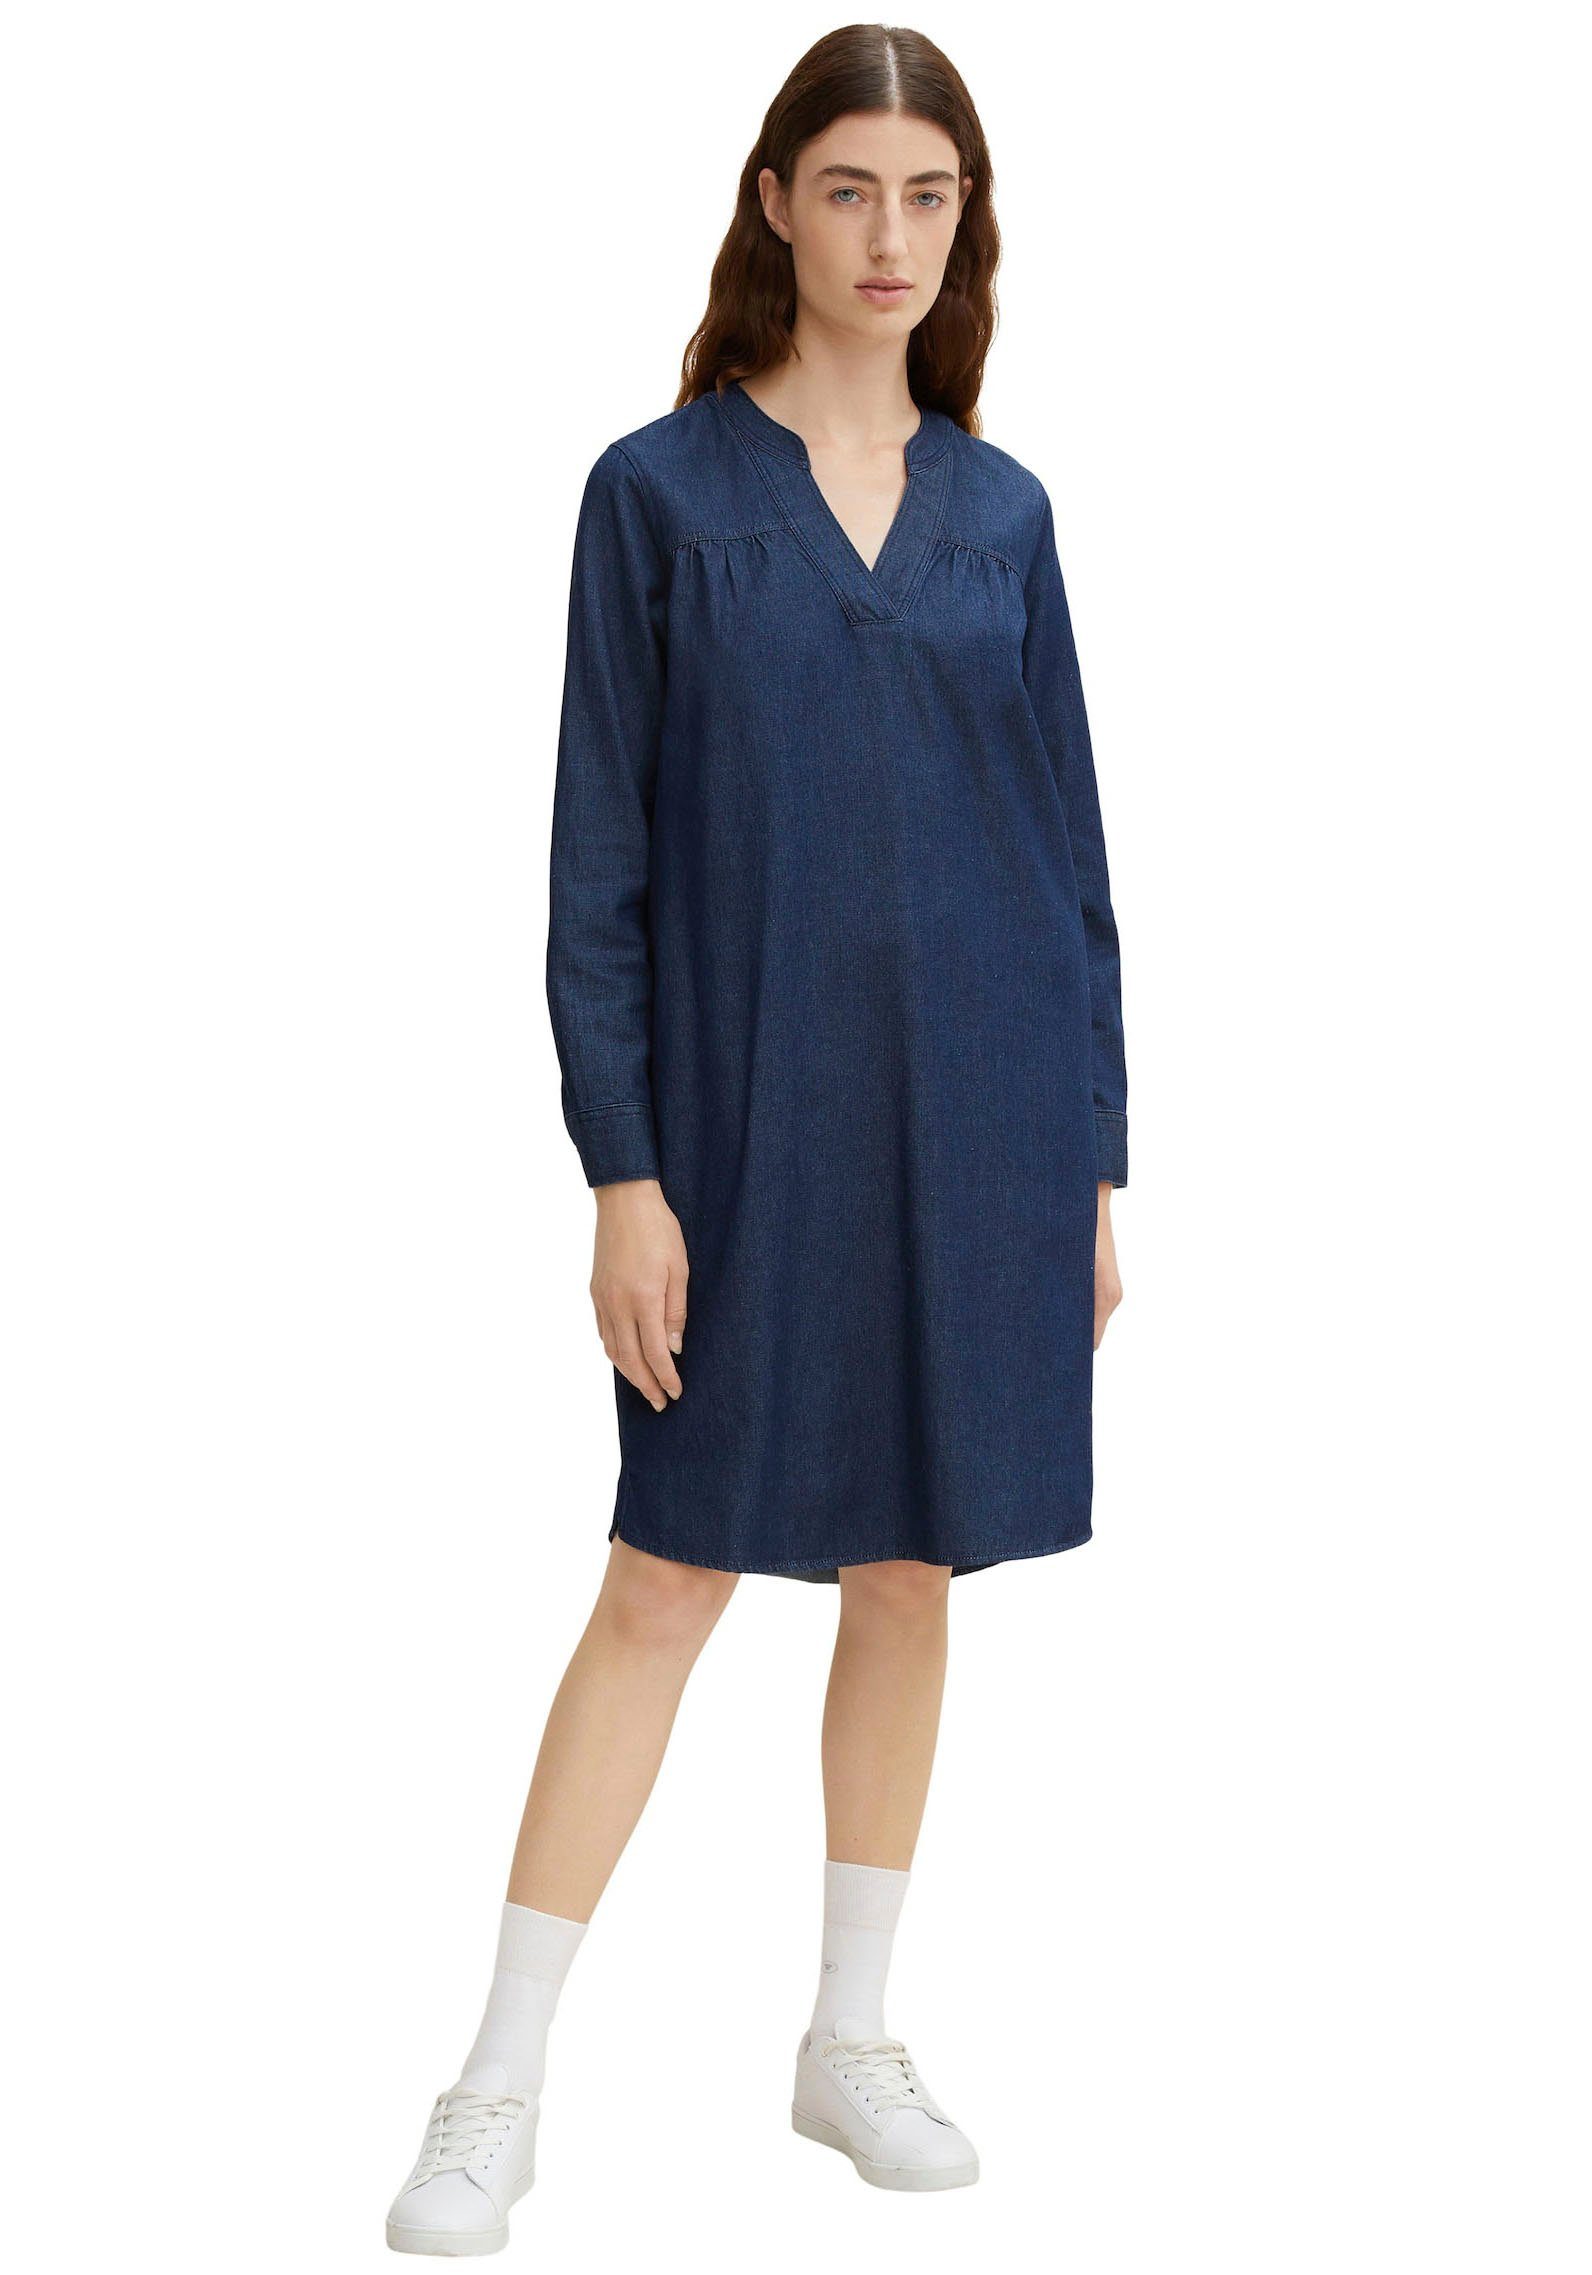 TOM TAILOR Jeanskleid online kaufen | OTTO